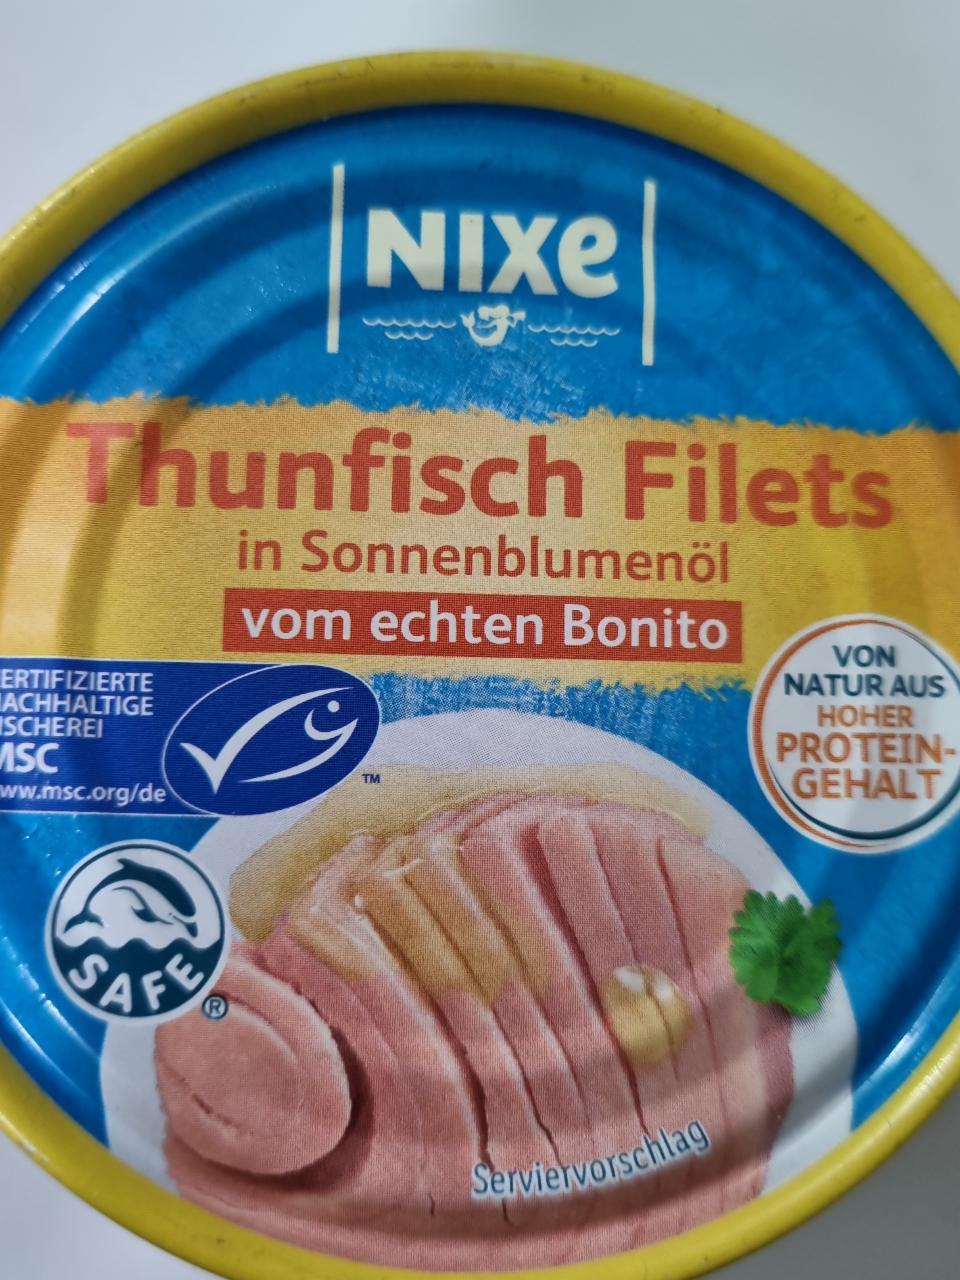 Фото - Thunfisch Filets in Sonnenblumenol Nixe